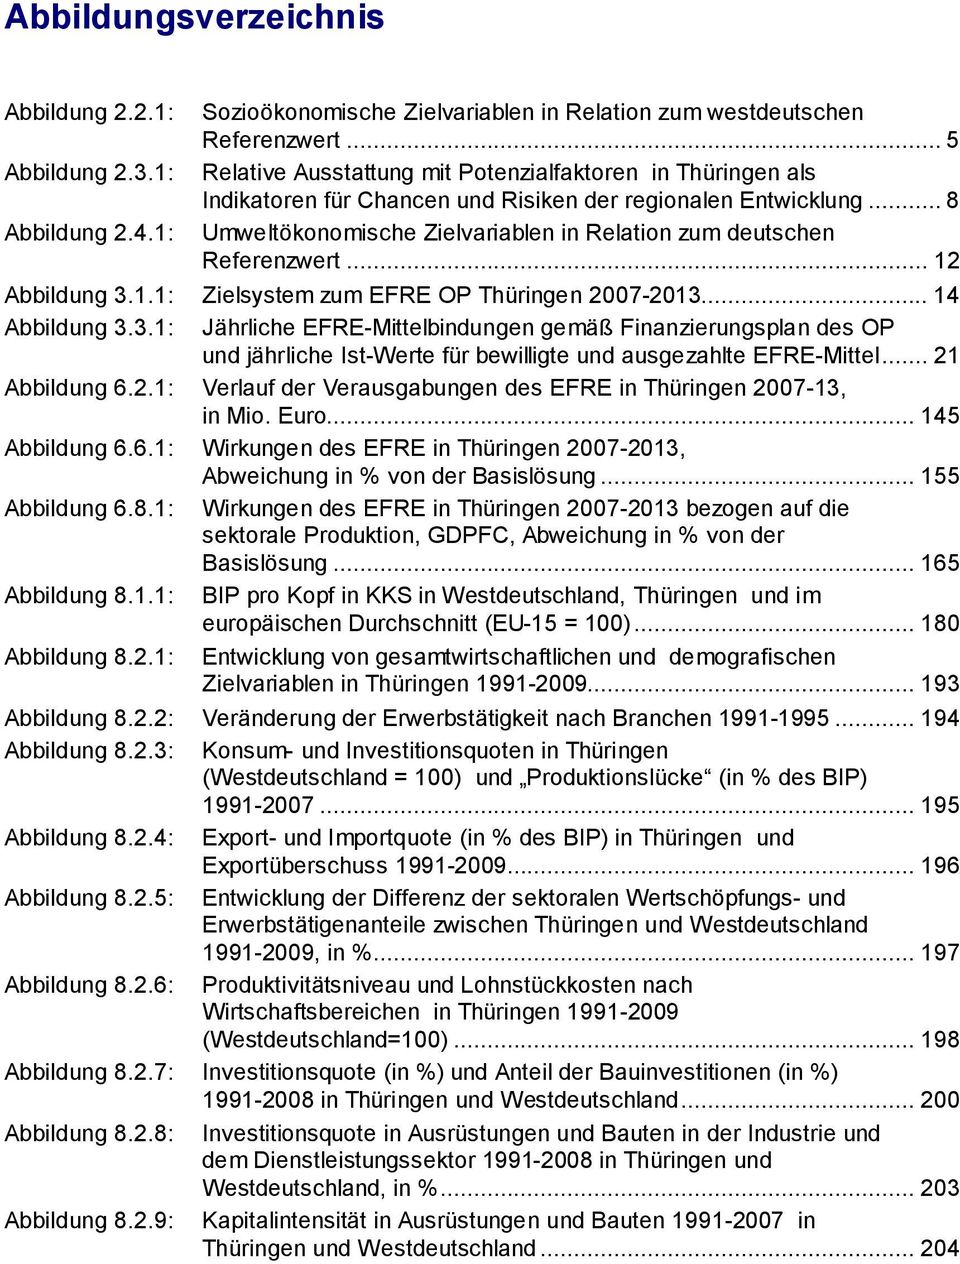 .. 8 Umweltökonomische Zielvariablen in Relation zum deutschen Referenzwert... 12 Abbildung 3.